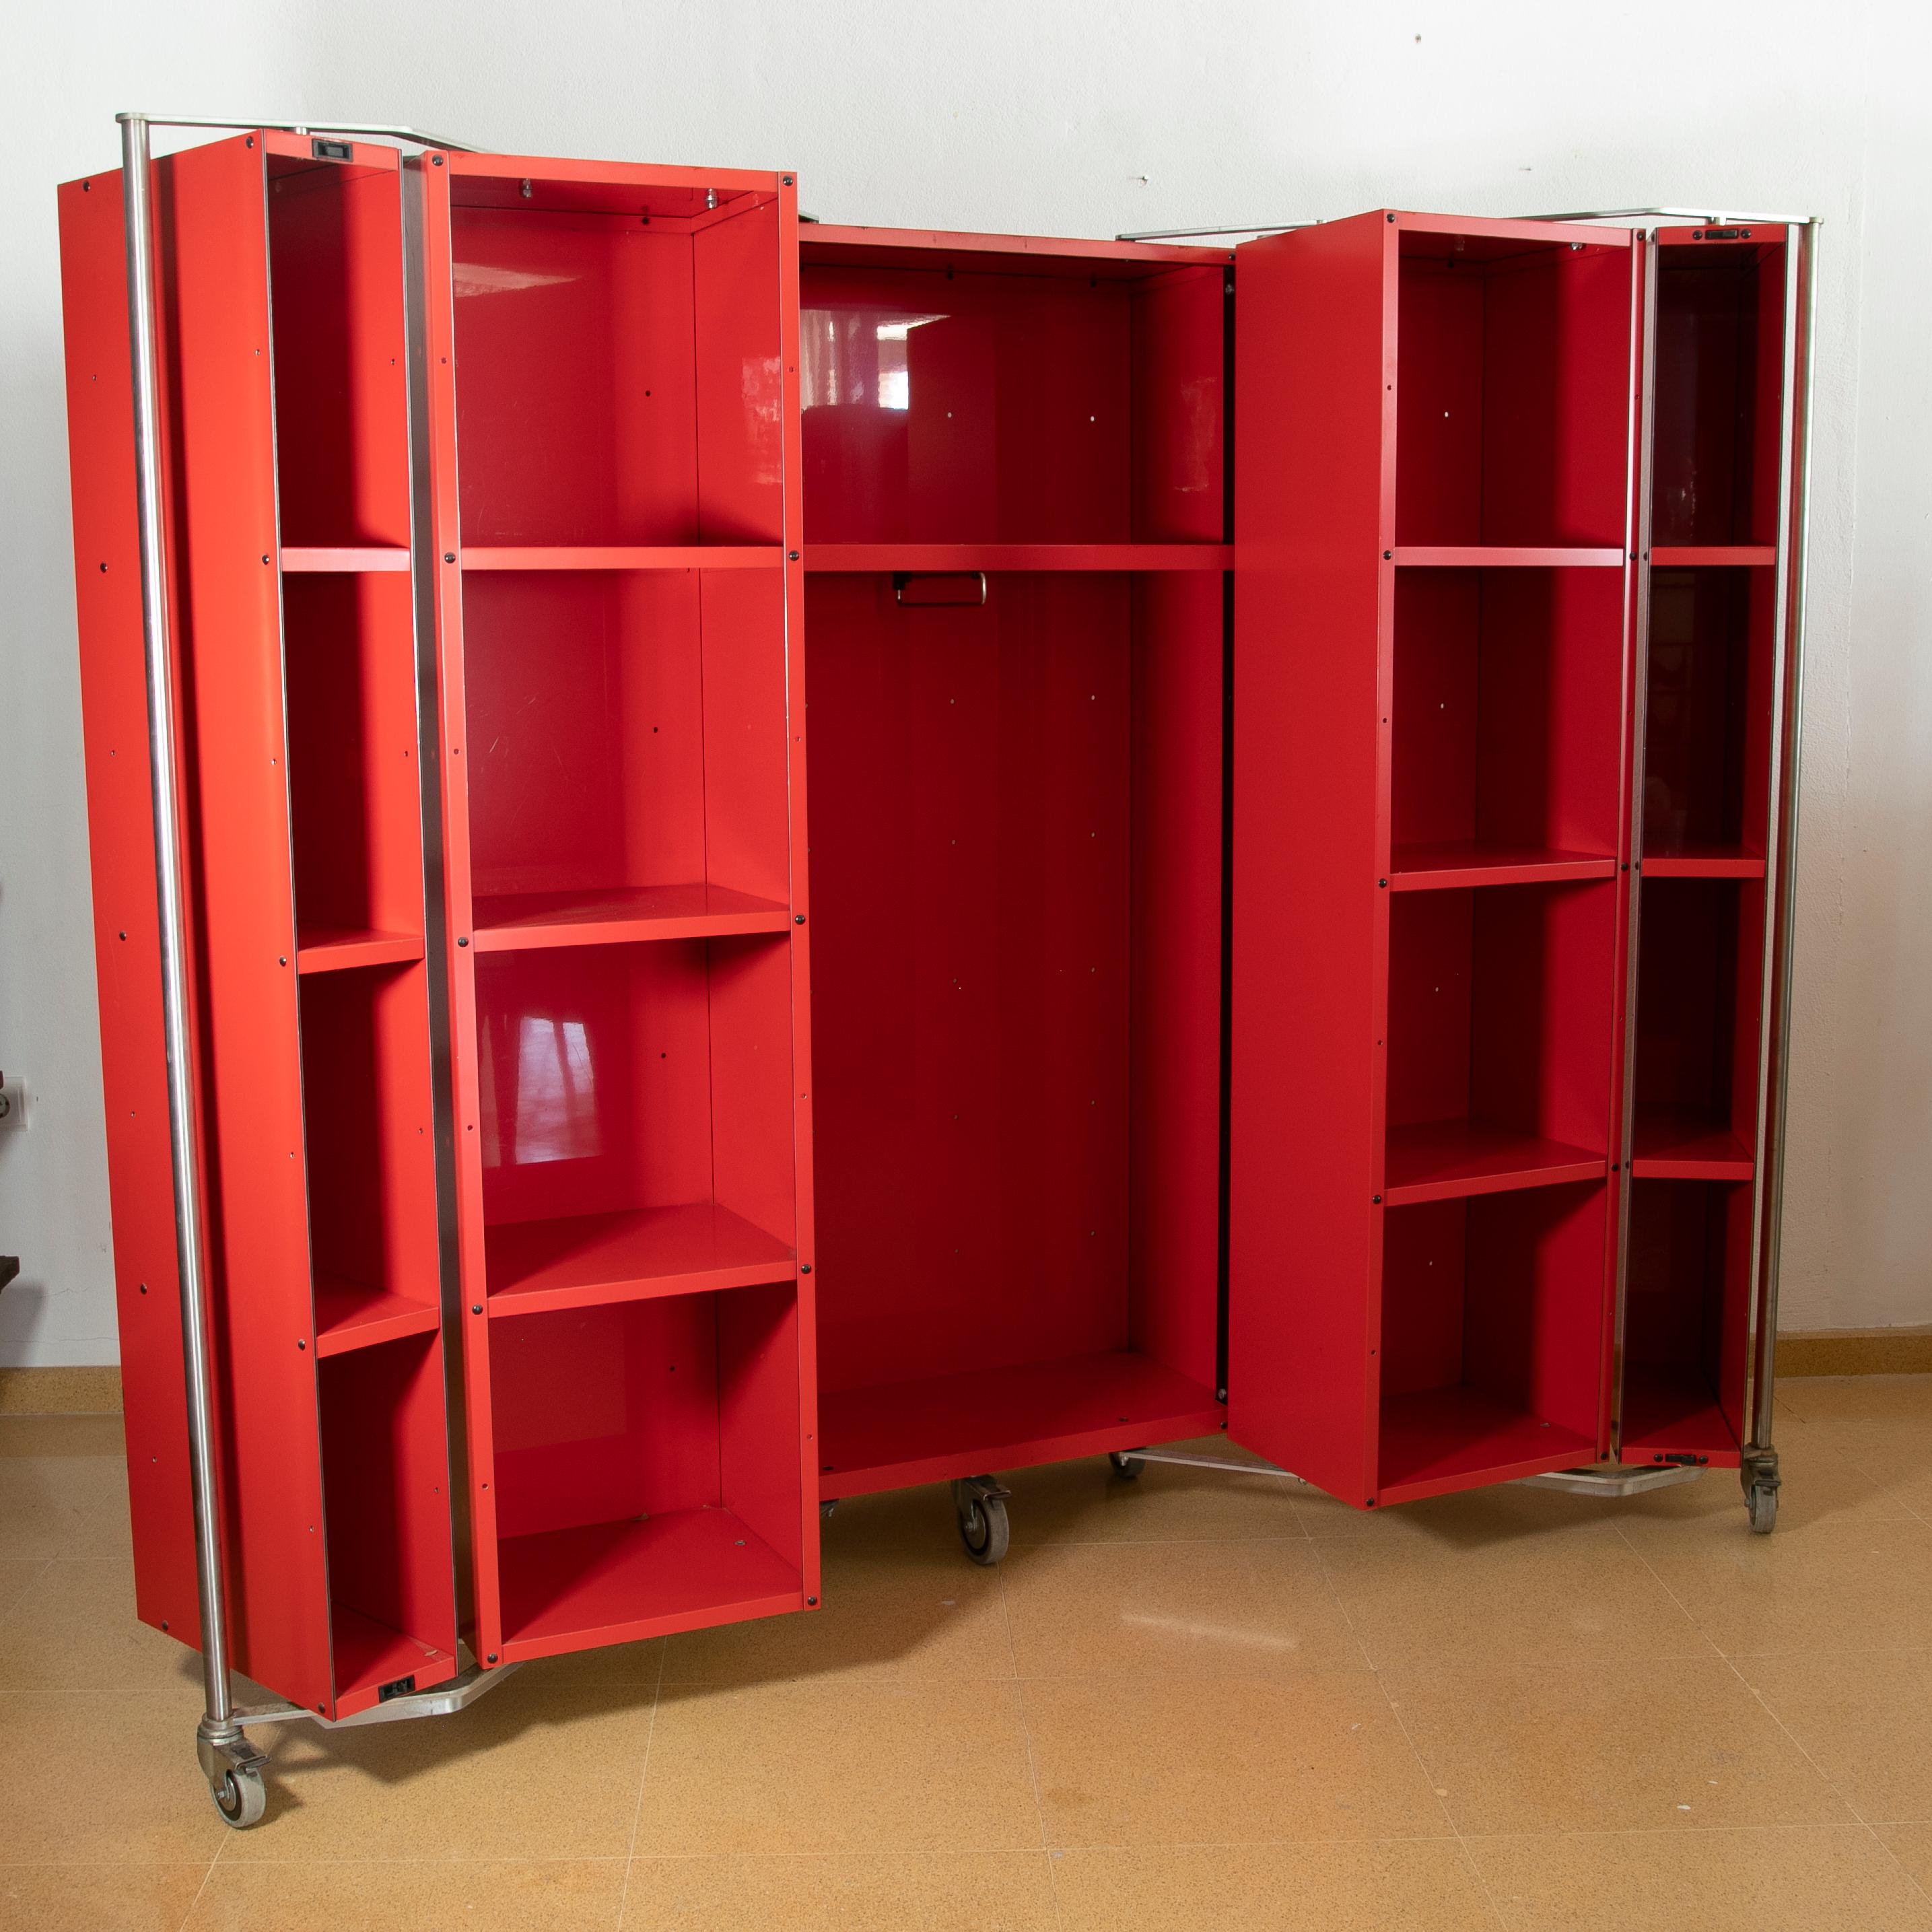 German travel wardrobe in red painted metal with Steel Handles.